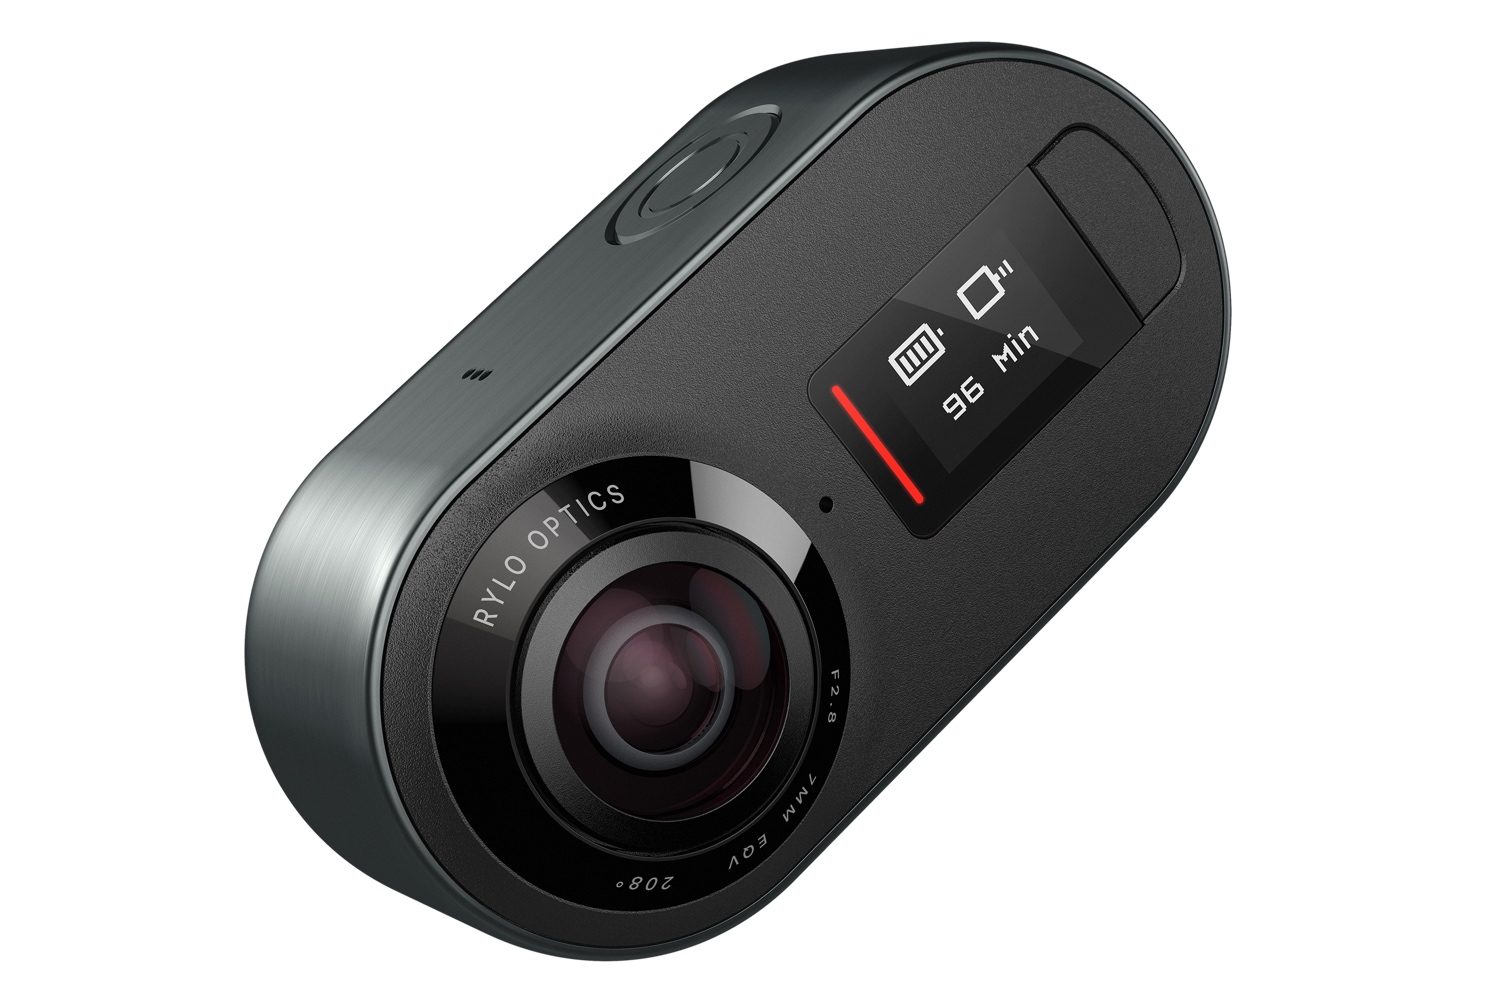 rylo 360 camera announced 4